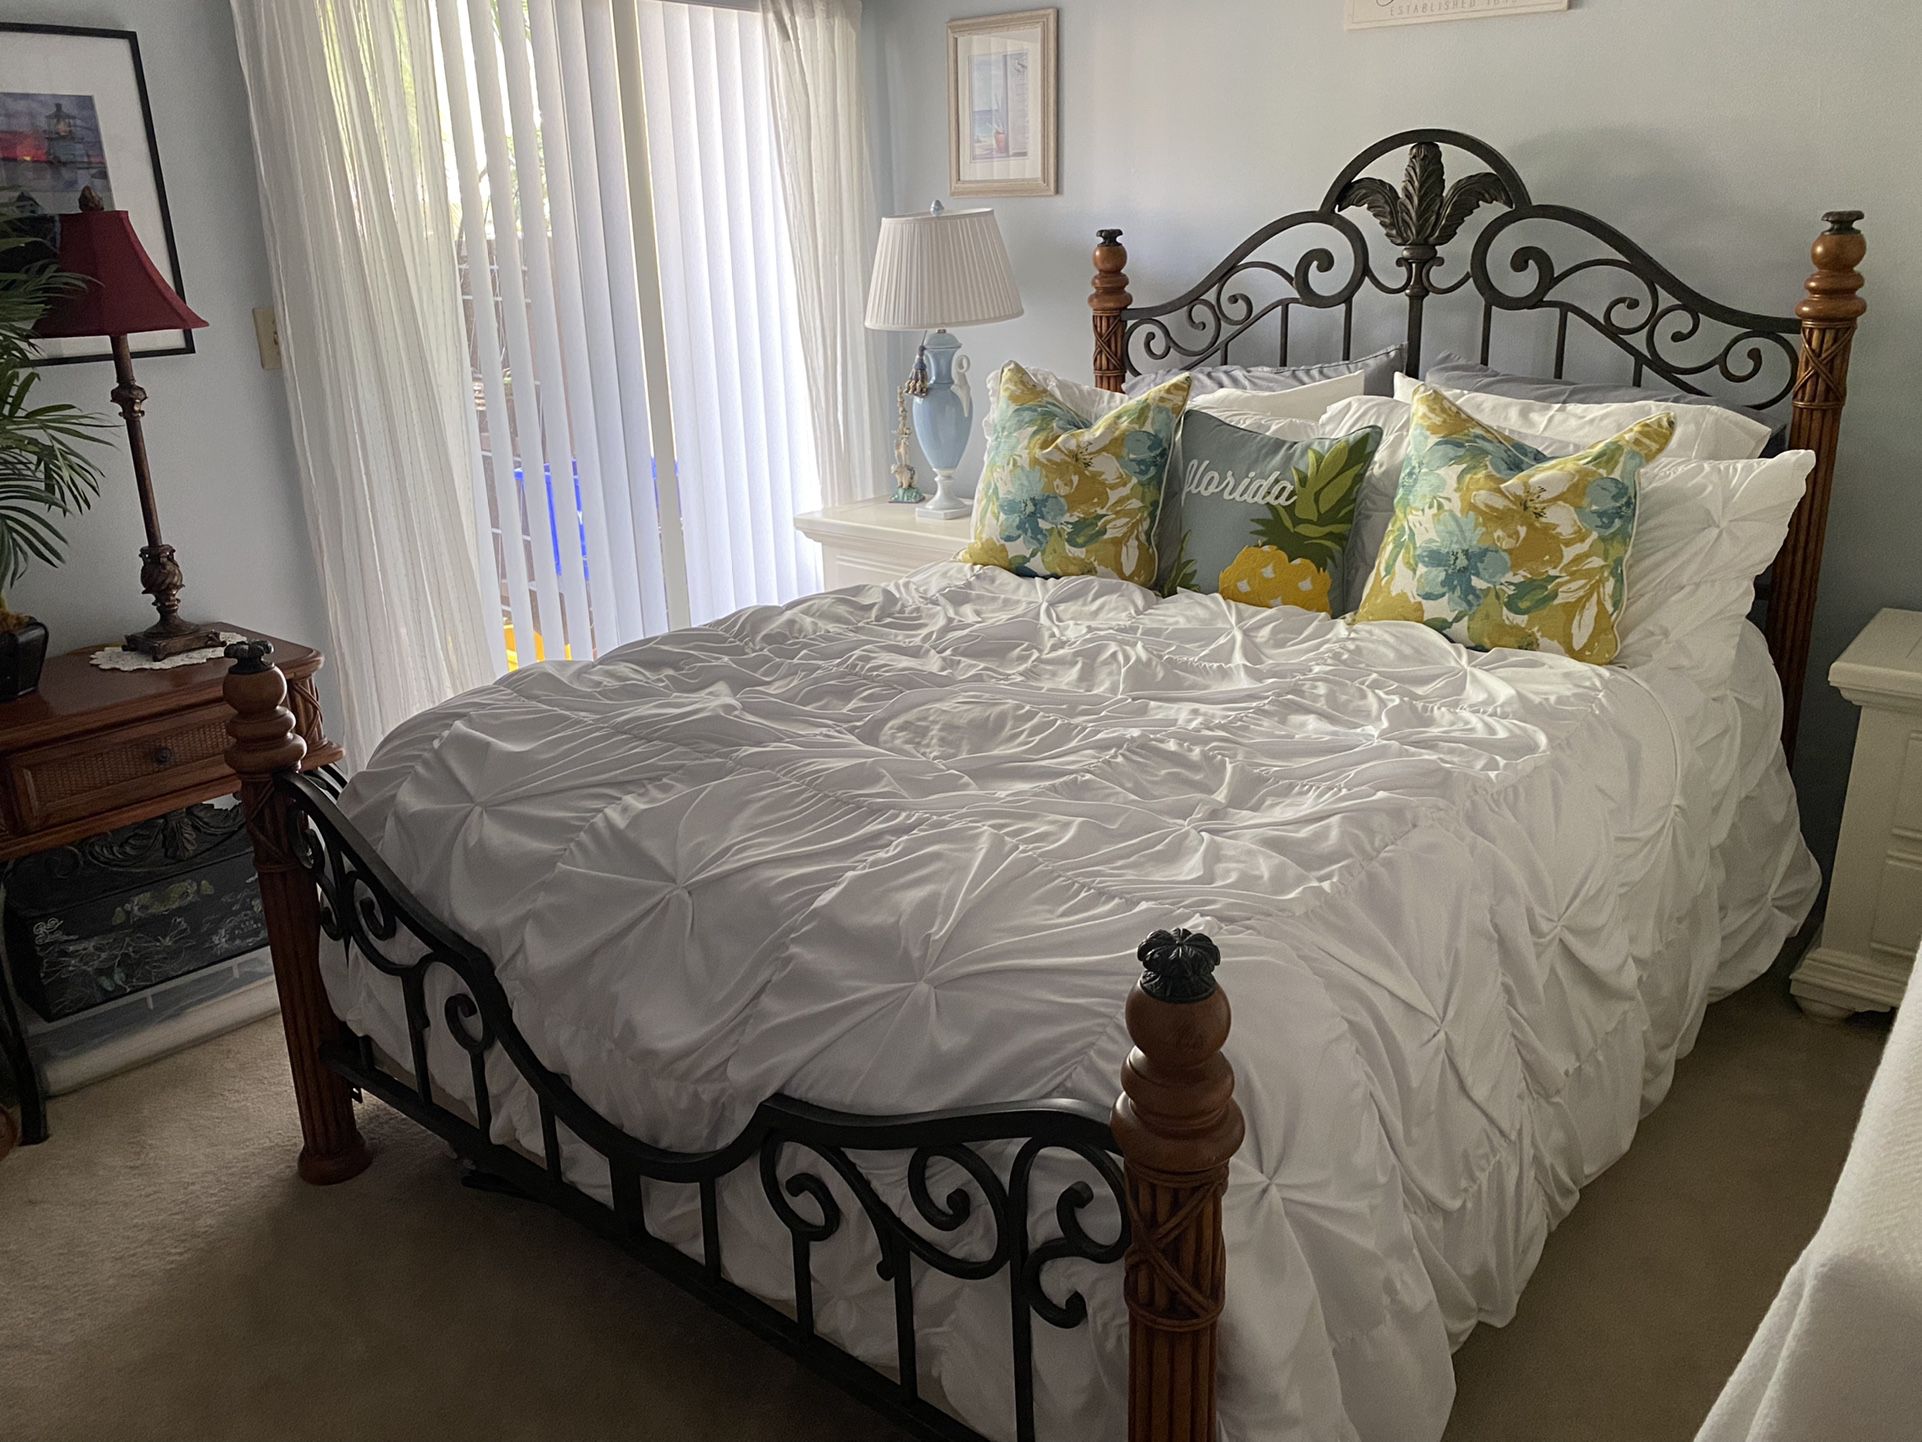 Queen Bedroom Set For Sale 